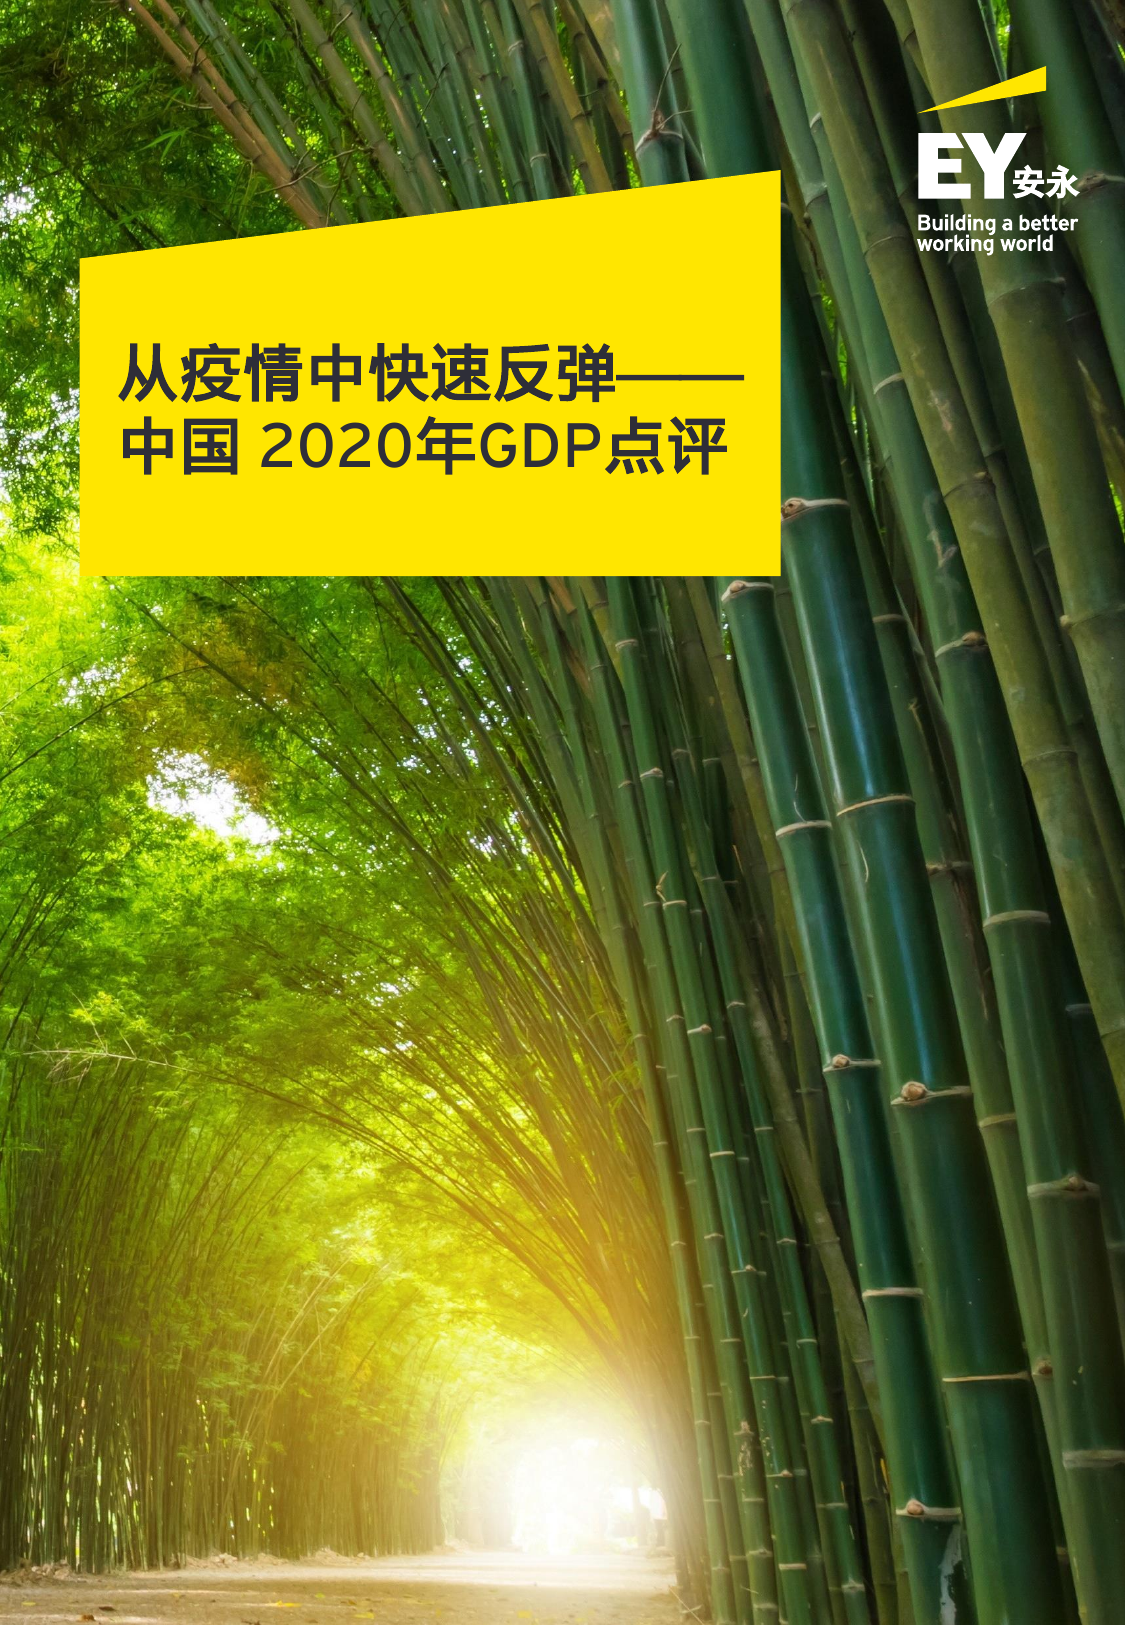 安永-从数据点评2021中国经济复苏之路-2021.02-26页